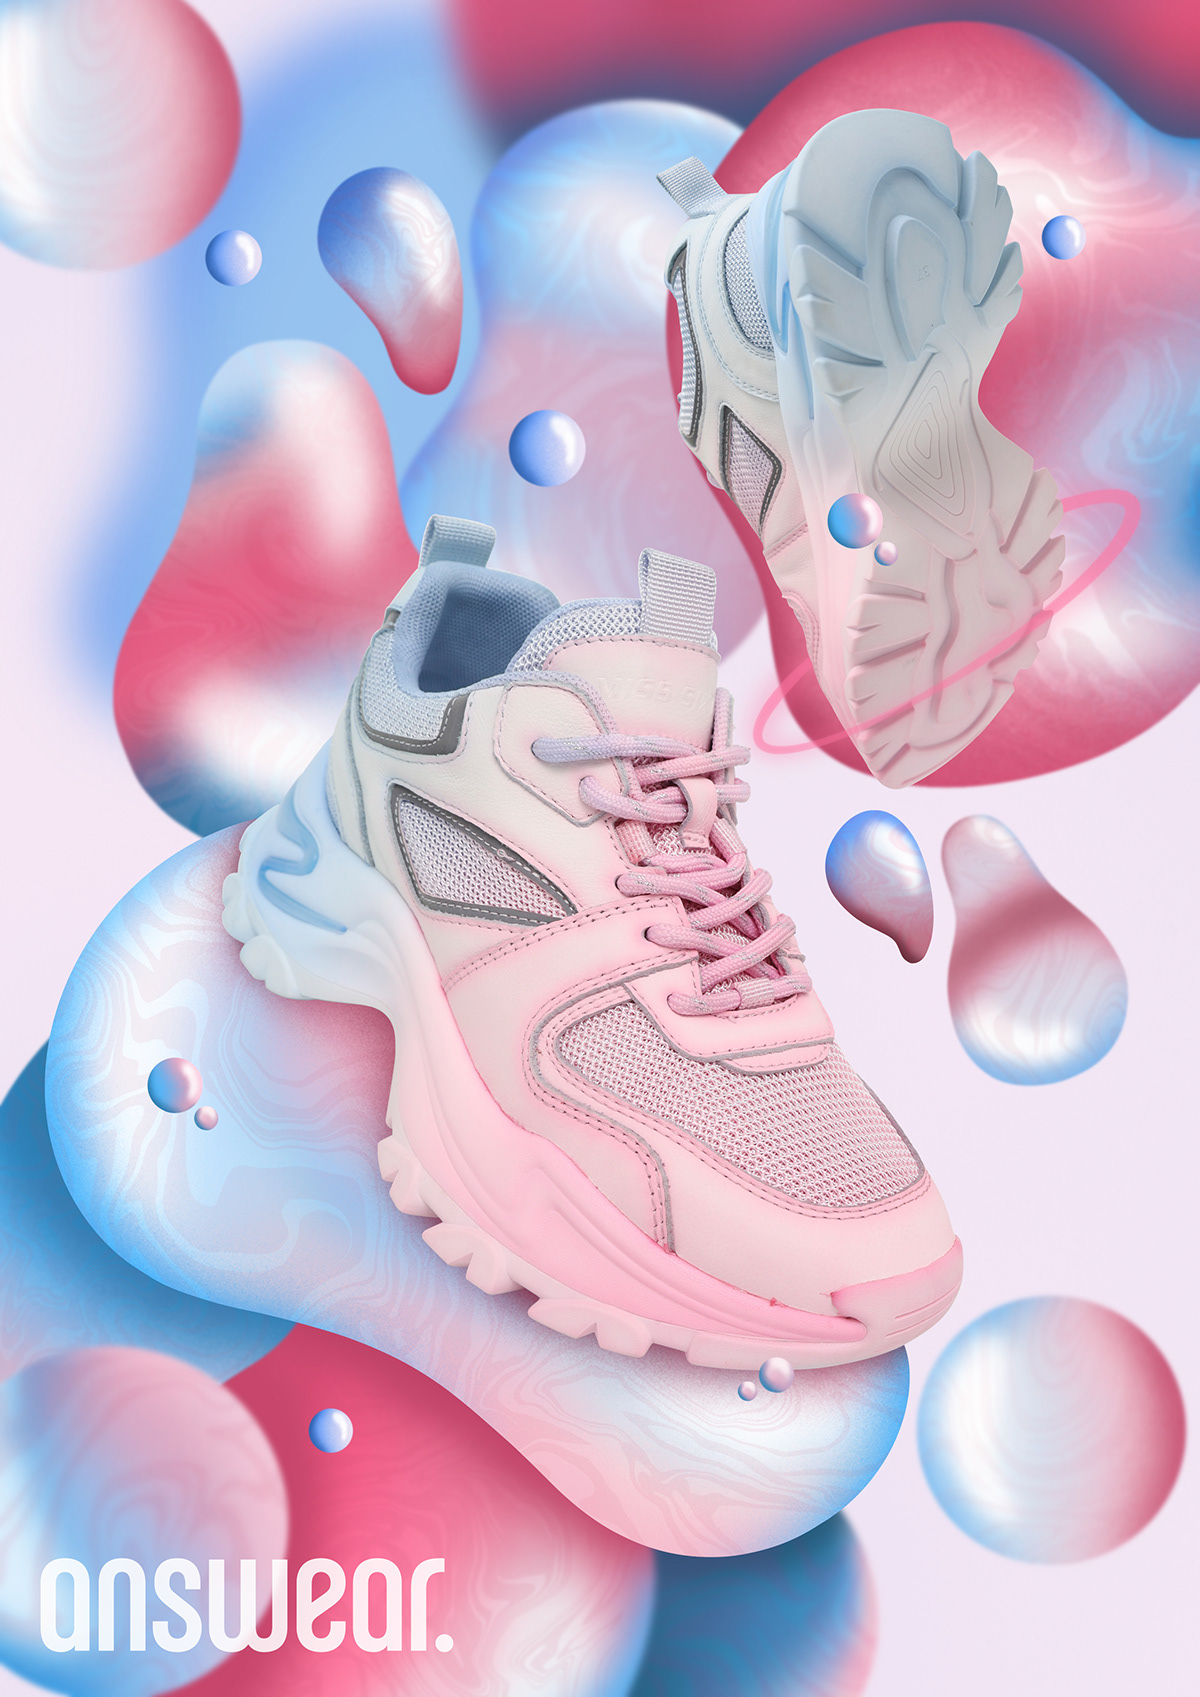 artwork Digital Art  digital illustration ILLUSTRATION  Illustrator photoshop Procreate sneakers streetwear